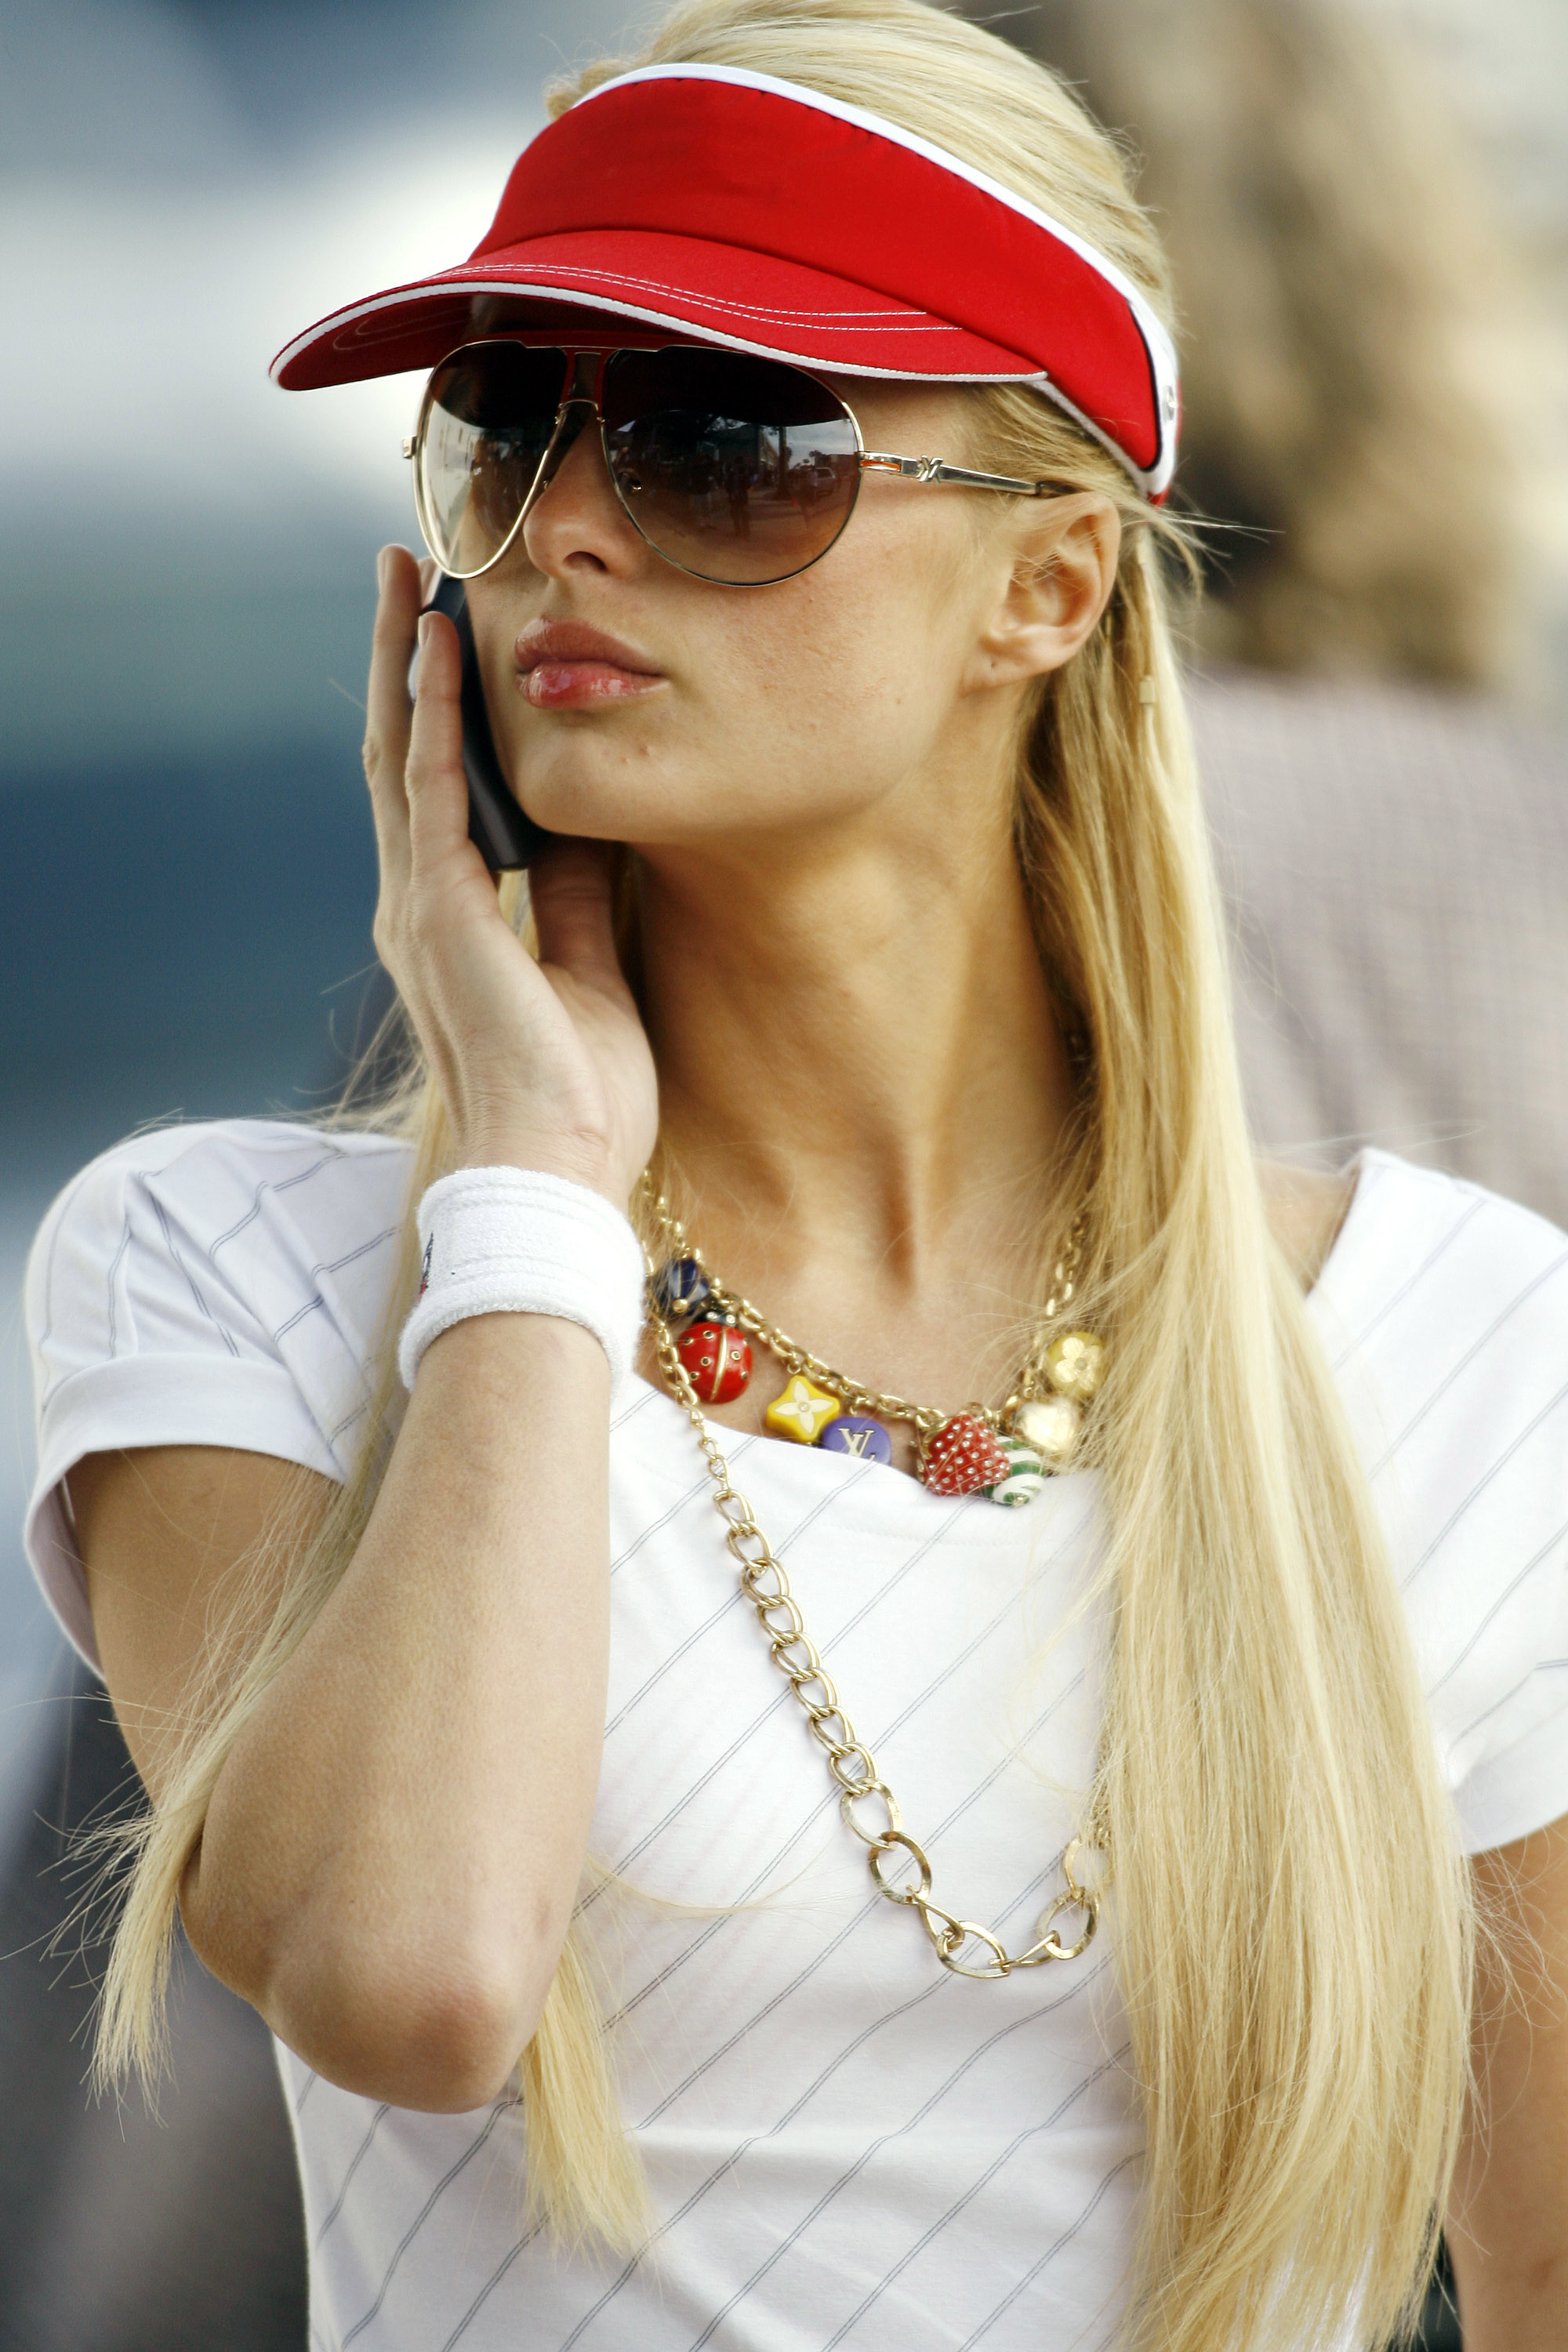 Paris Hilton styles a charm necklace